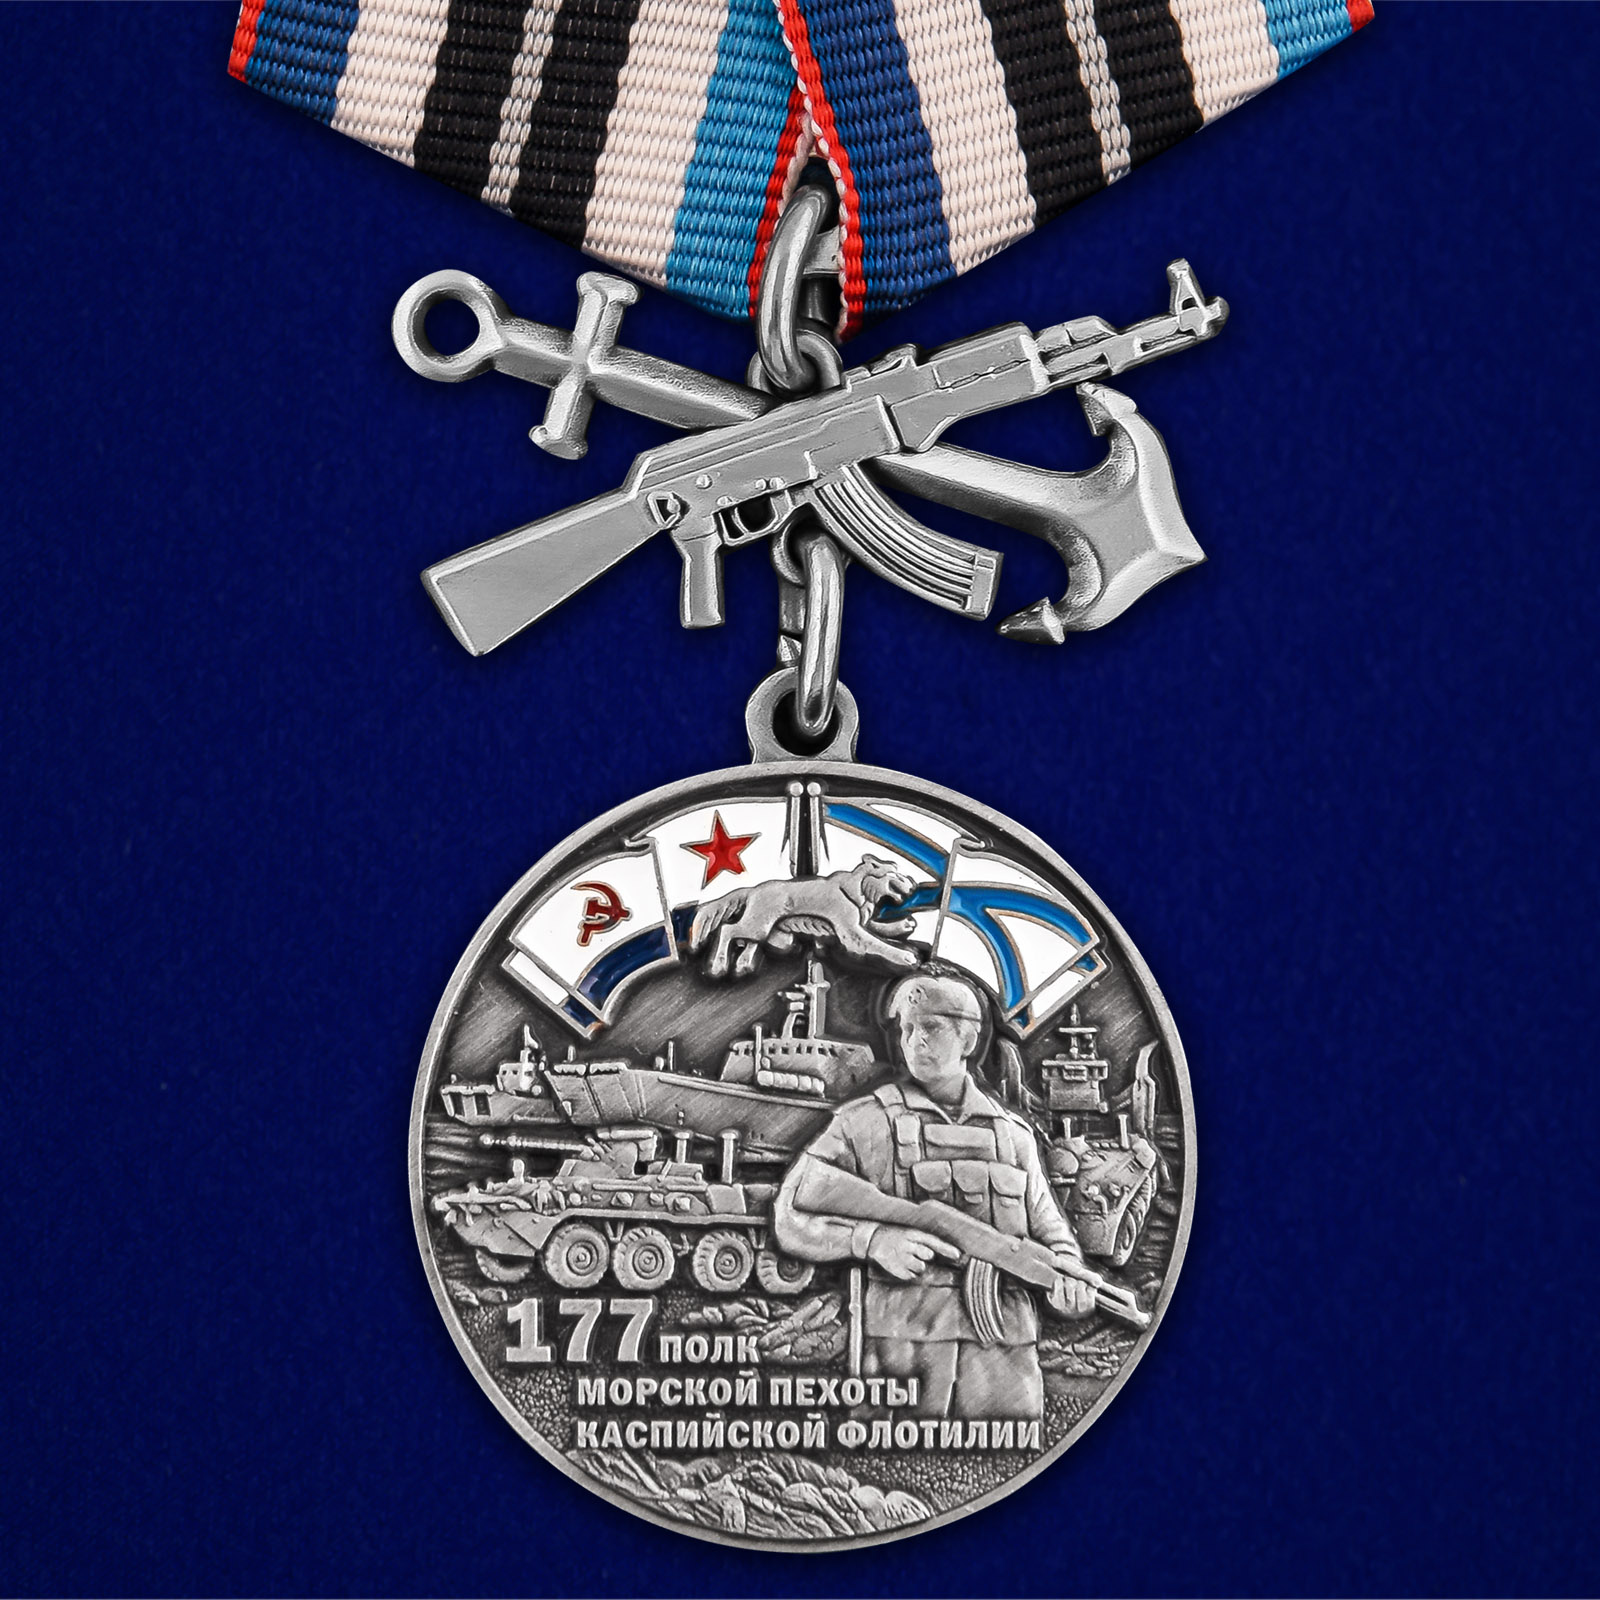 Купить медаль 177-й полк морской пехоты онлайн